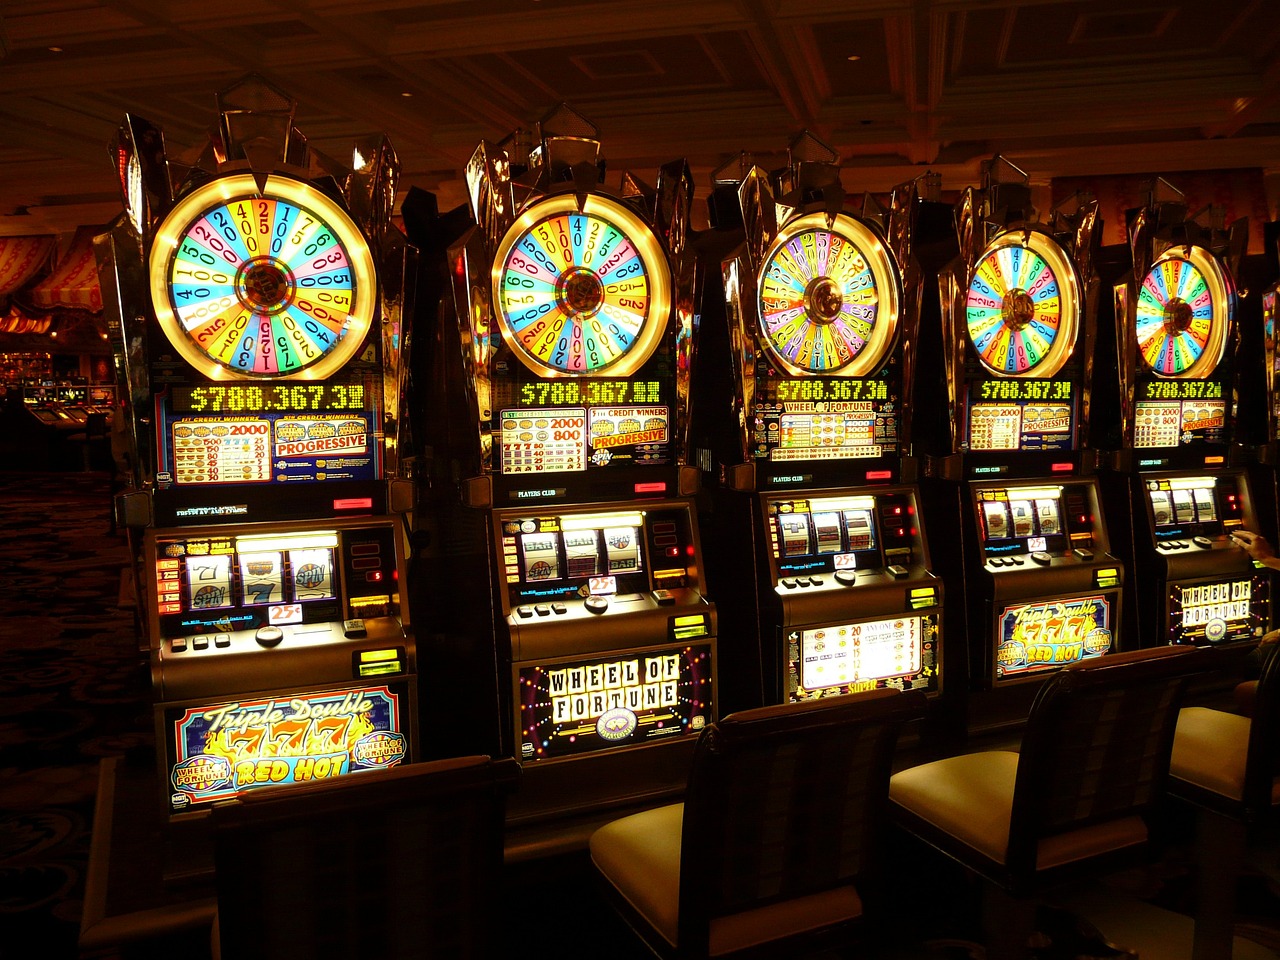 Bedava Dönüş Hakkı Sunan Casinolar